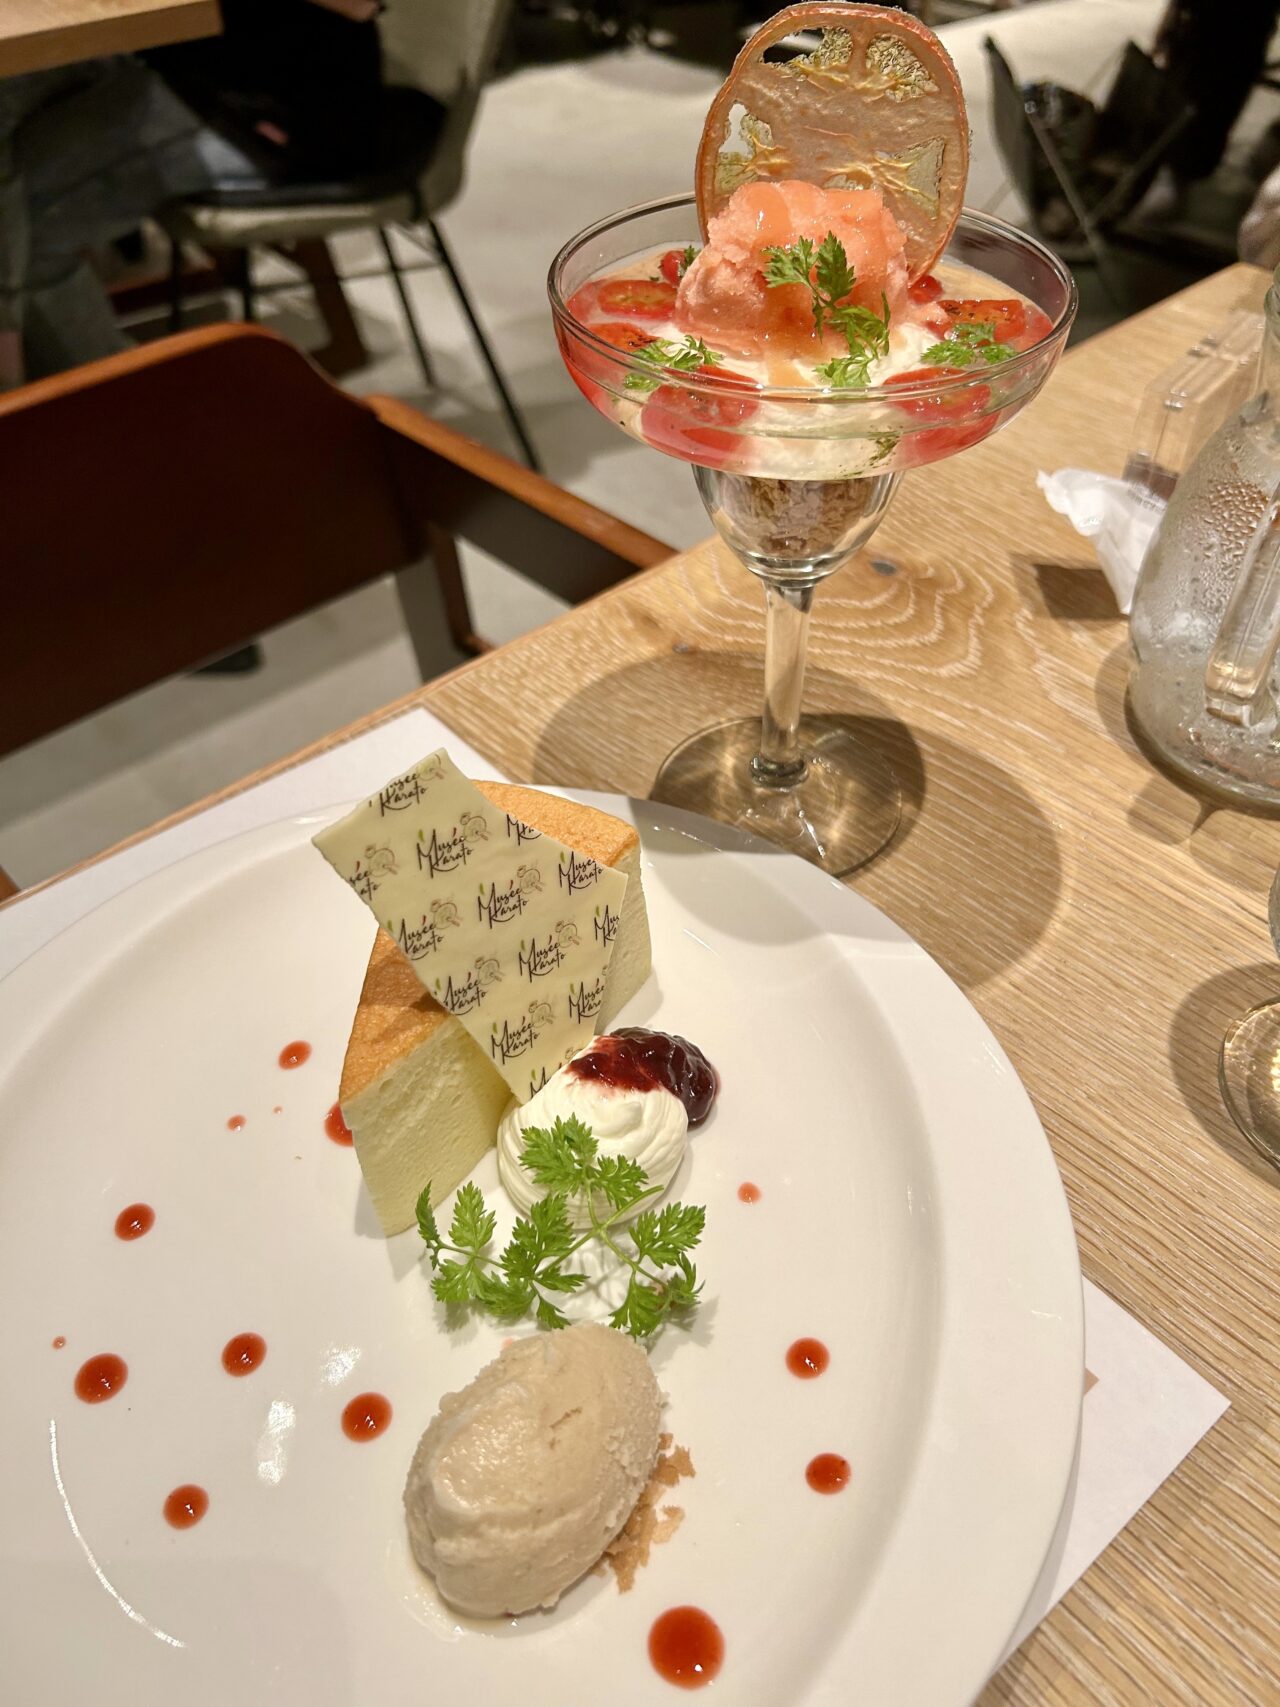 ミュゼカラトのテーブルオーダーブッフェディナー。
とろけるスフレチーズケーキ　ミルクのアイスクリーム添え＆真っ赤なトマトのデザート　トマトのデクリネゾン